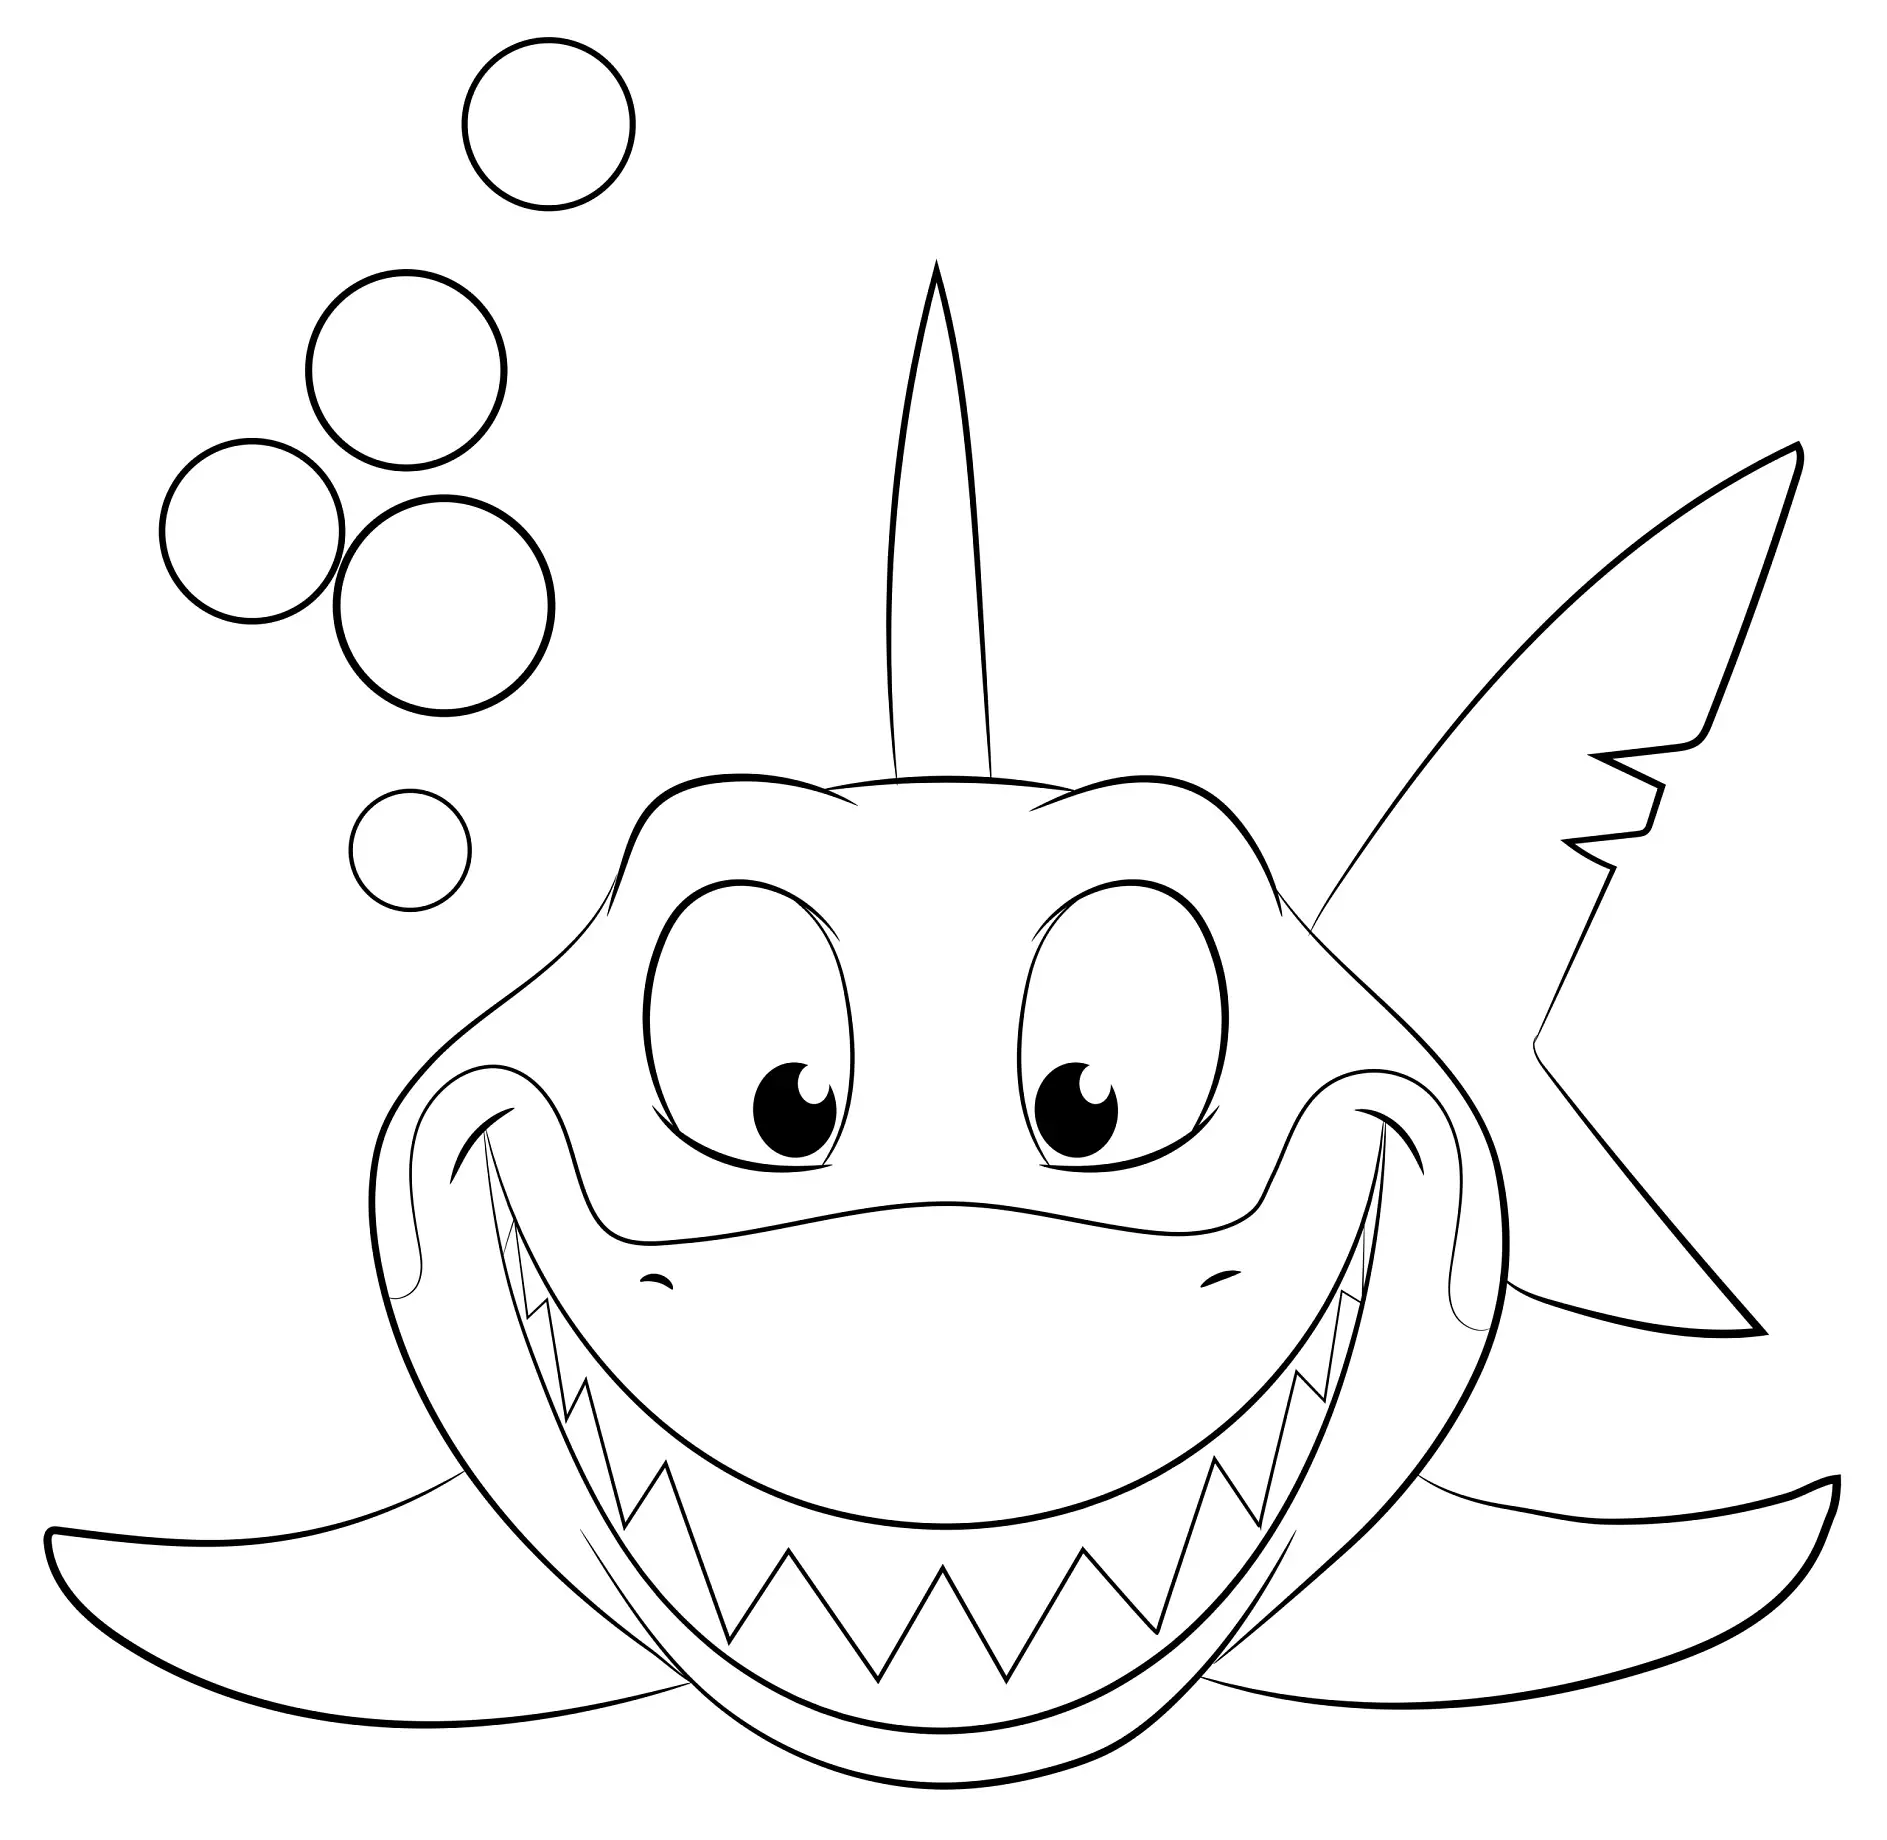 Ausmalbild lächelnder Hai mit Luftblasen